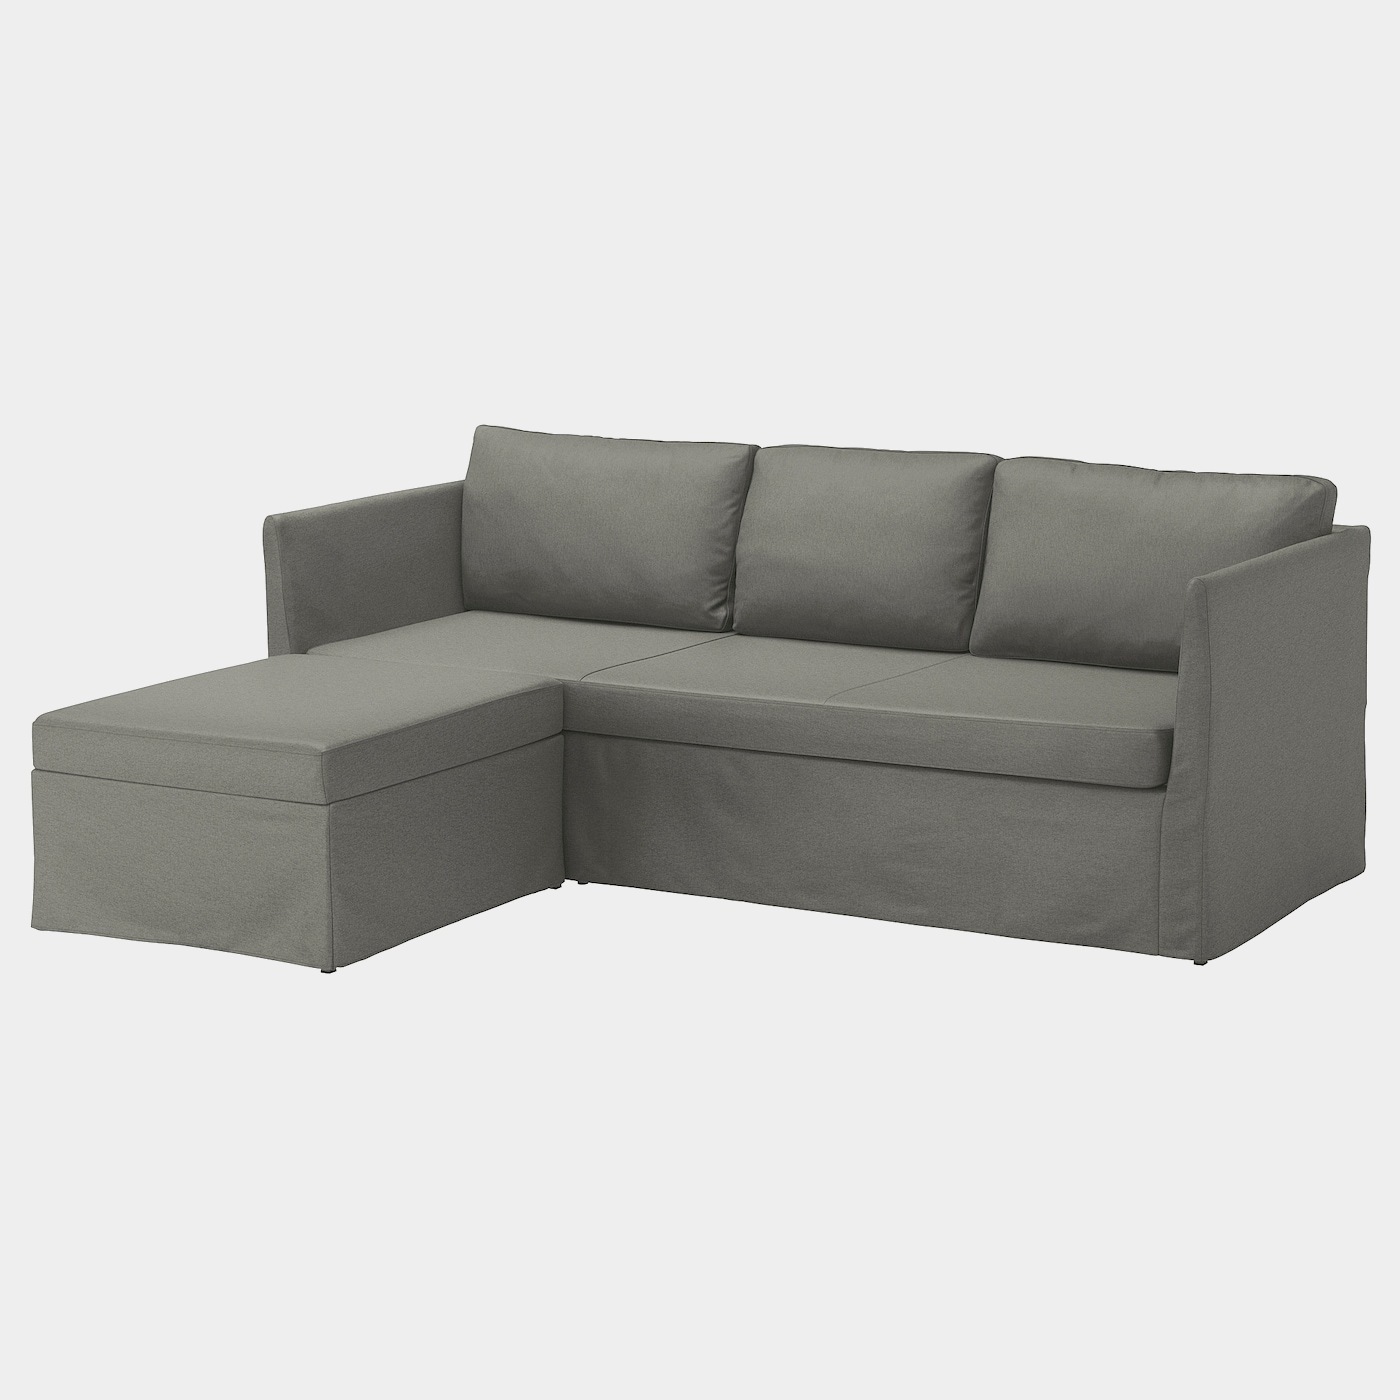 BRÅTHULT Ecksofa 3-sitzig  - Sofas, Textil - Möbel Ideen für dein Zuhause von Home Trends. Möbel Trends von Social Media Influencer für dein Skandi Zuhause.